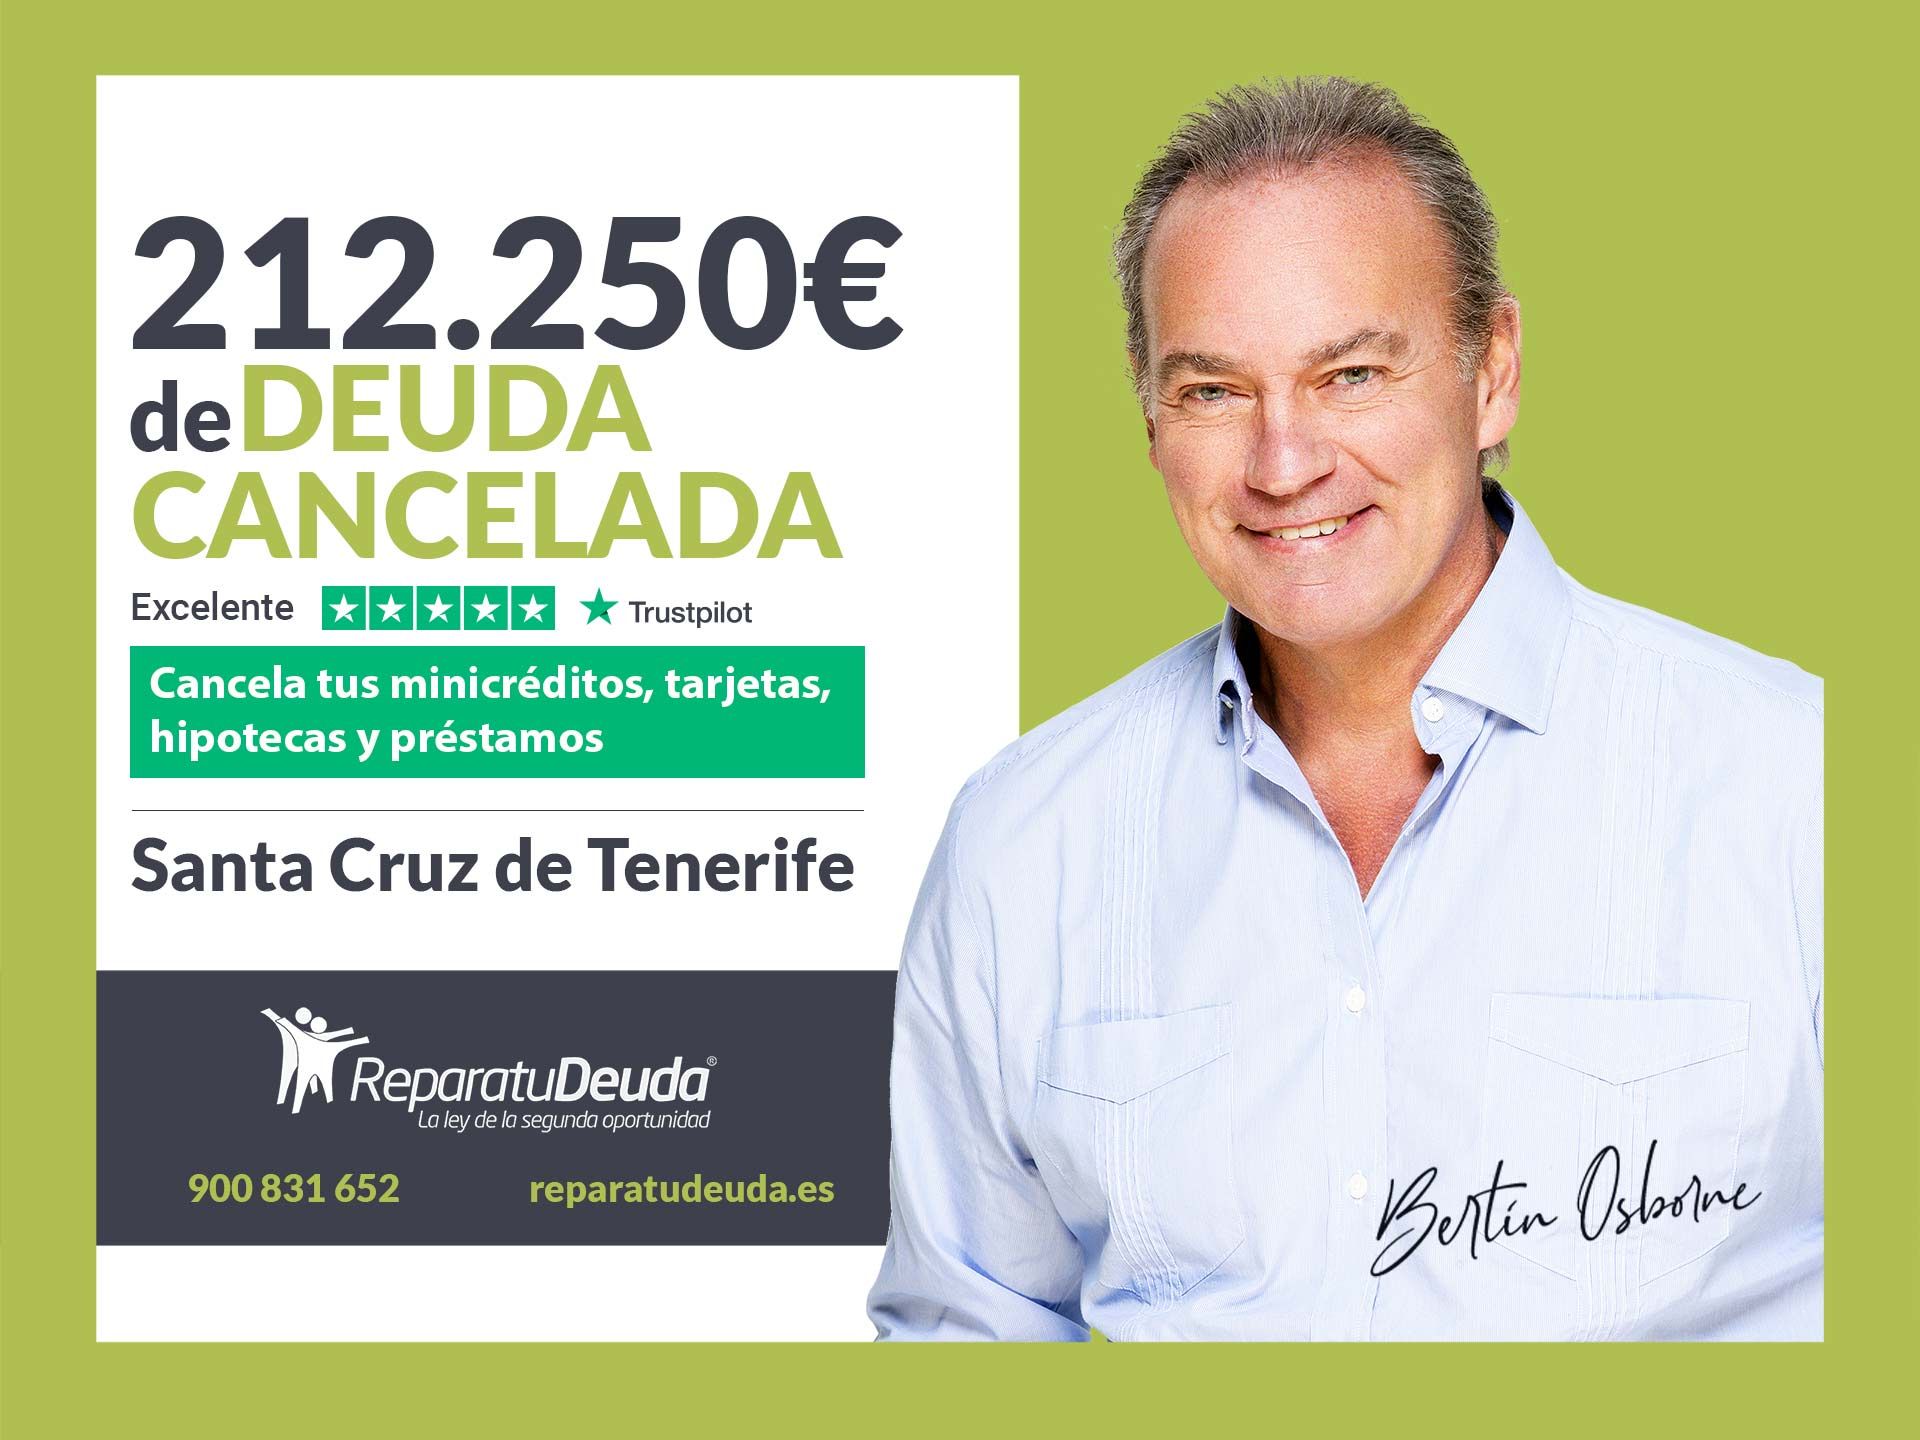 Repara tu Deuda Abogados cancela 212.250 ? en Tenerife (Canarias) con la Ley de Segunda Oportunidad